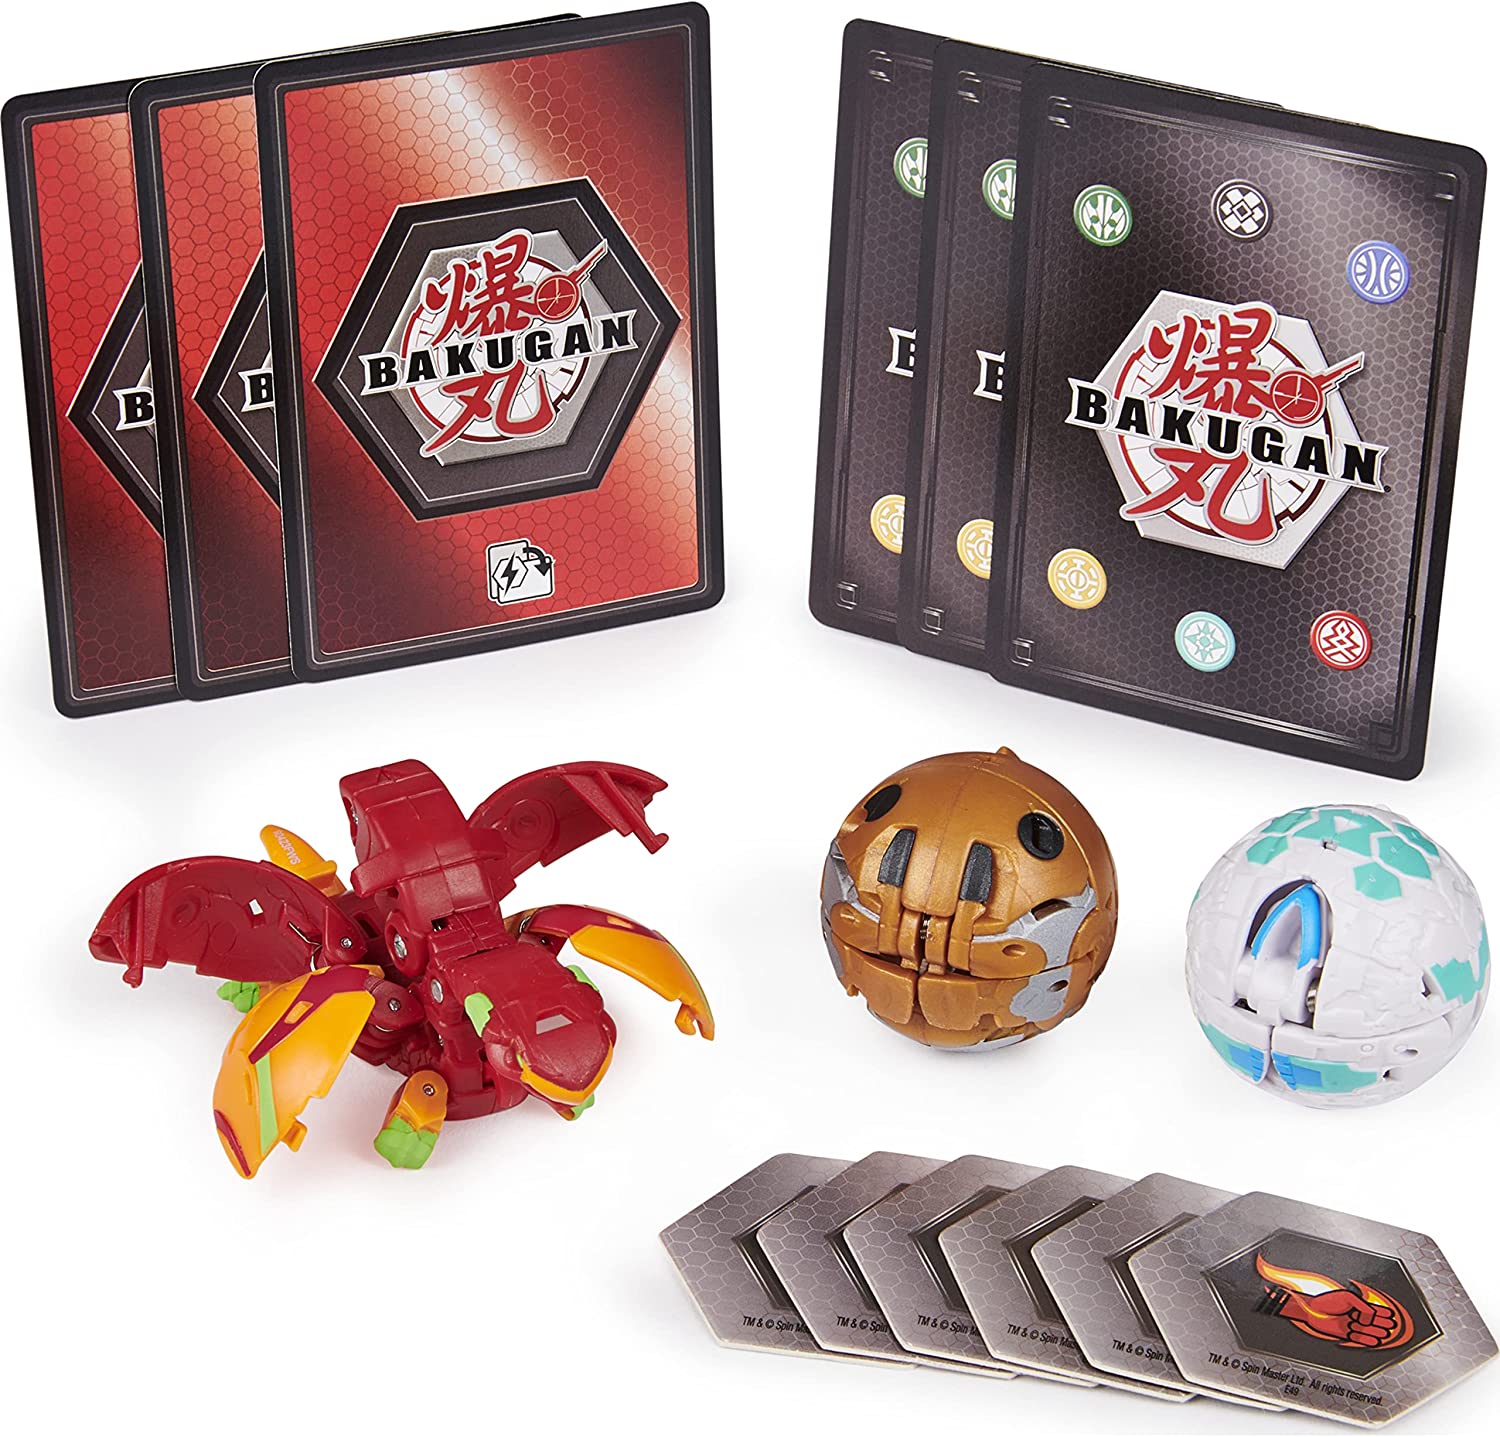 Best Buy: Spin Master Bakugan Starter Pack 6009834